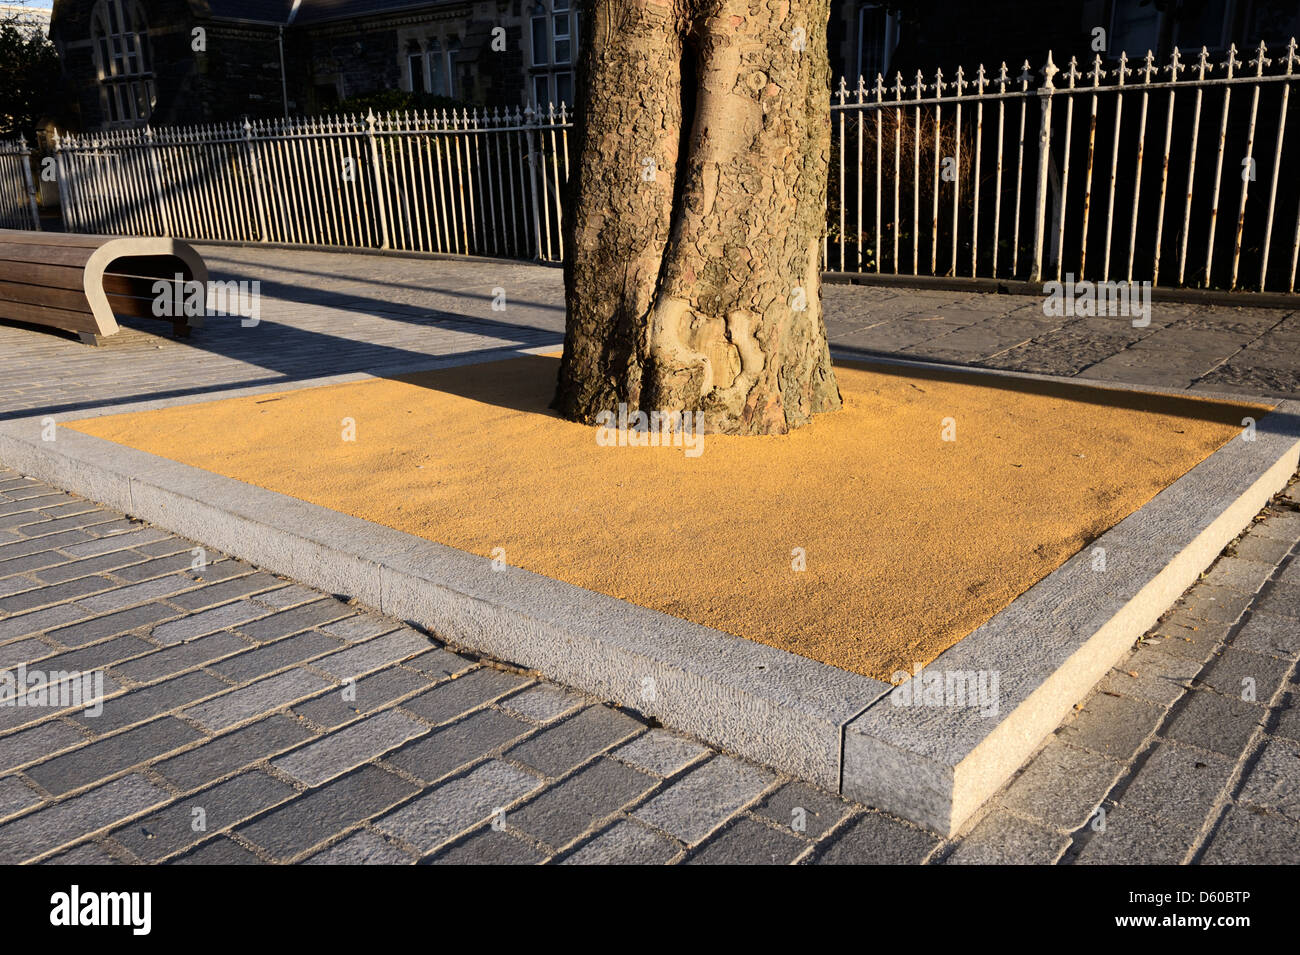 Sollevate struttura permeabile pit intorno a un albero maturo riduce la superficie di deflusso di acqua e protegge l'albero radici, Aberystwyth, Wales, Regno Unito. Foto Stock